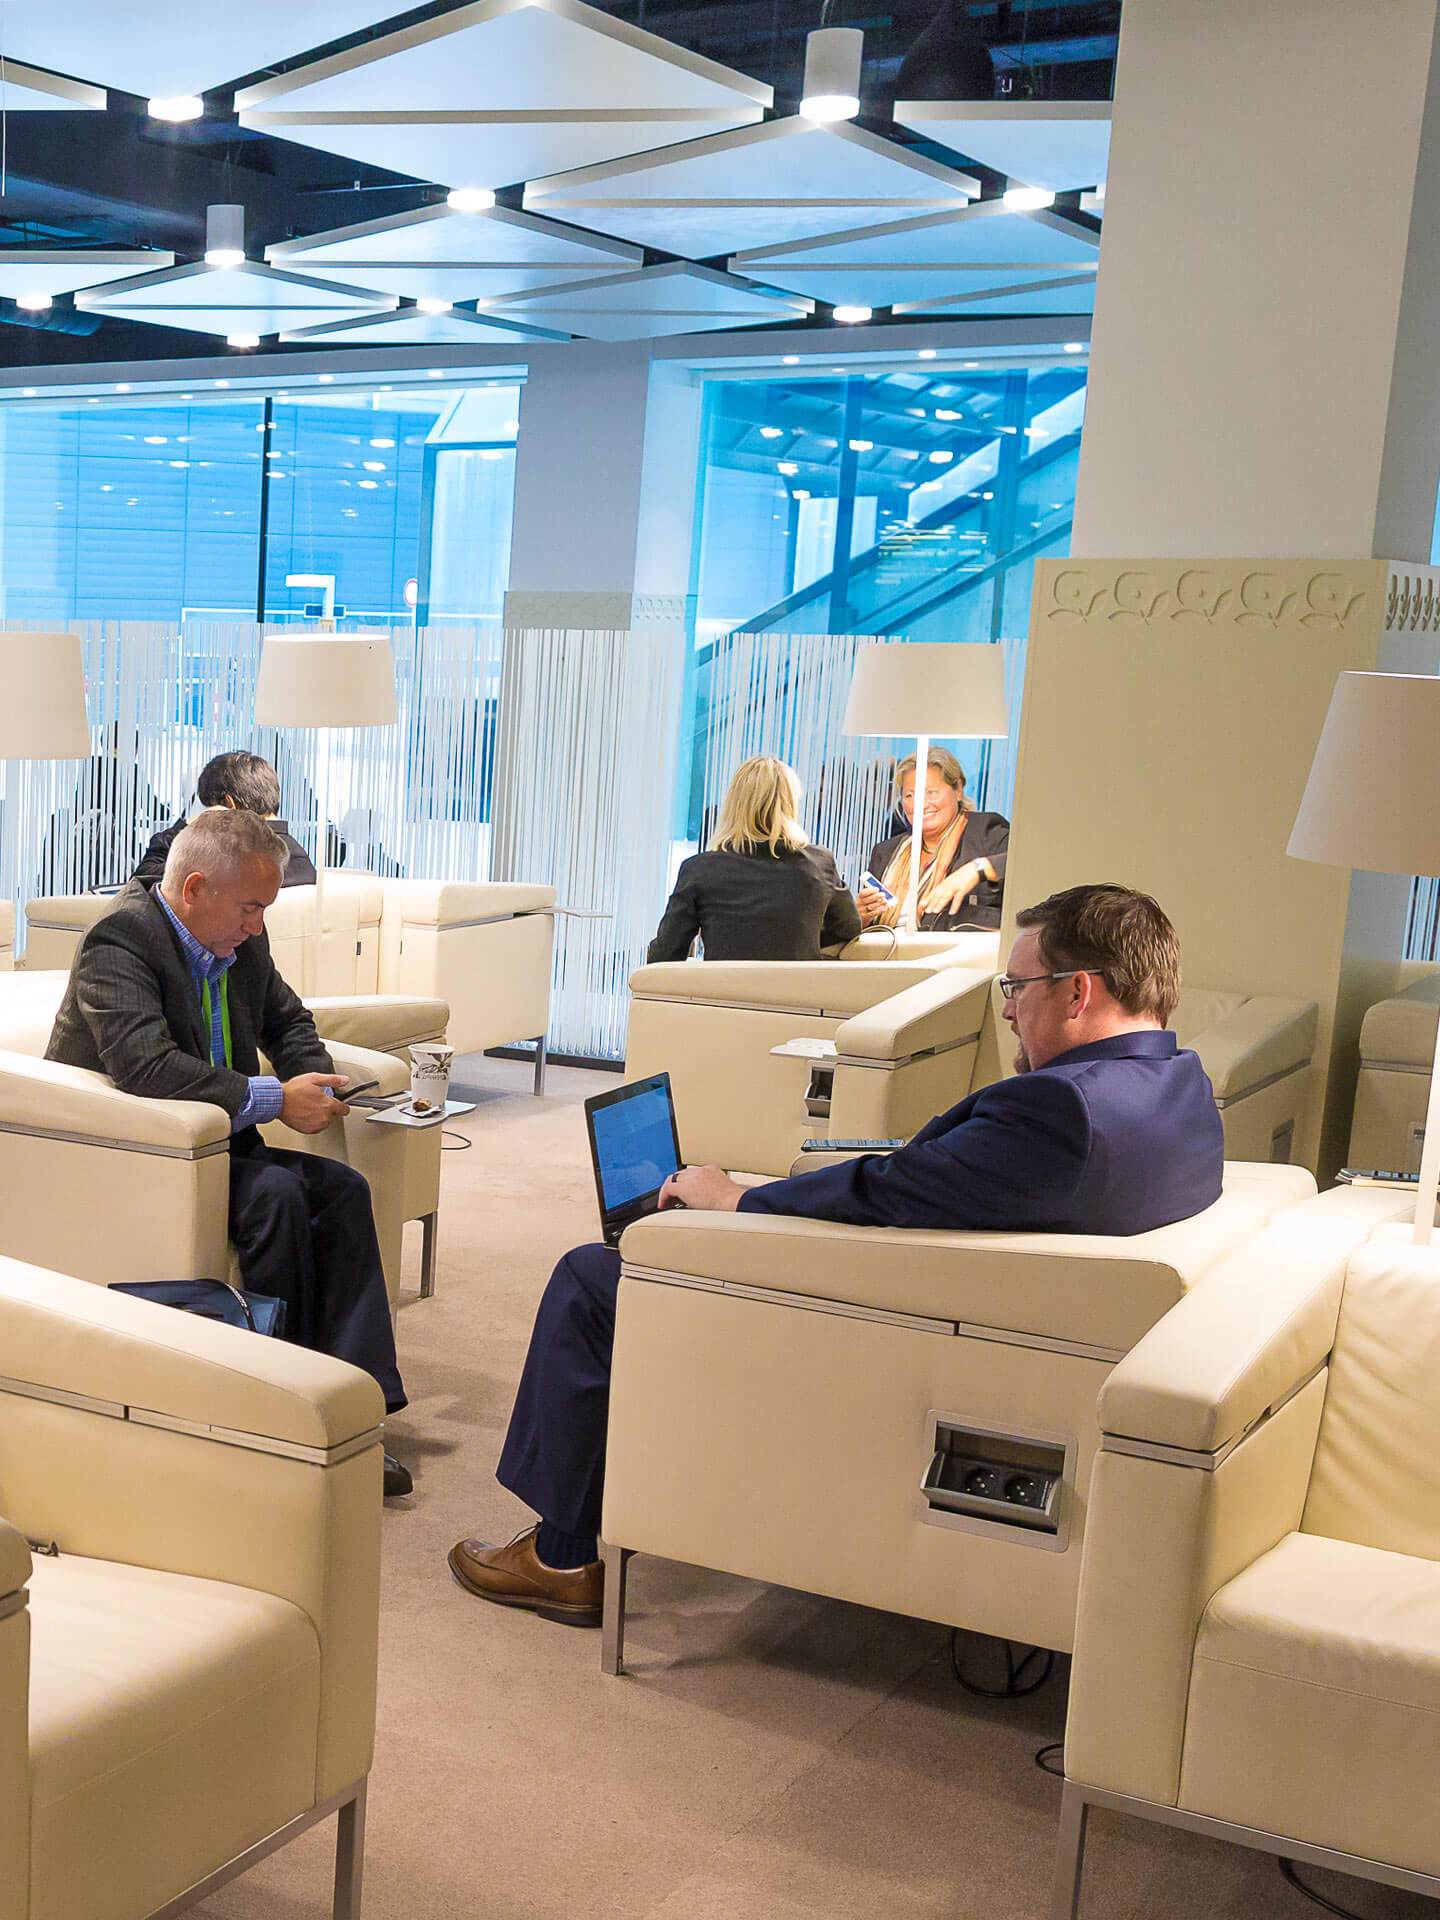 Foto: Raum Level 0 Business Lounge Menschen beim Arbeiten und Netzwerken